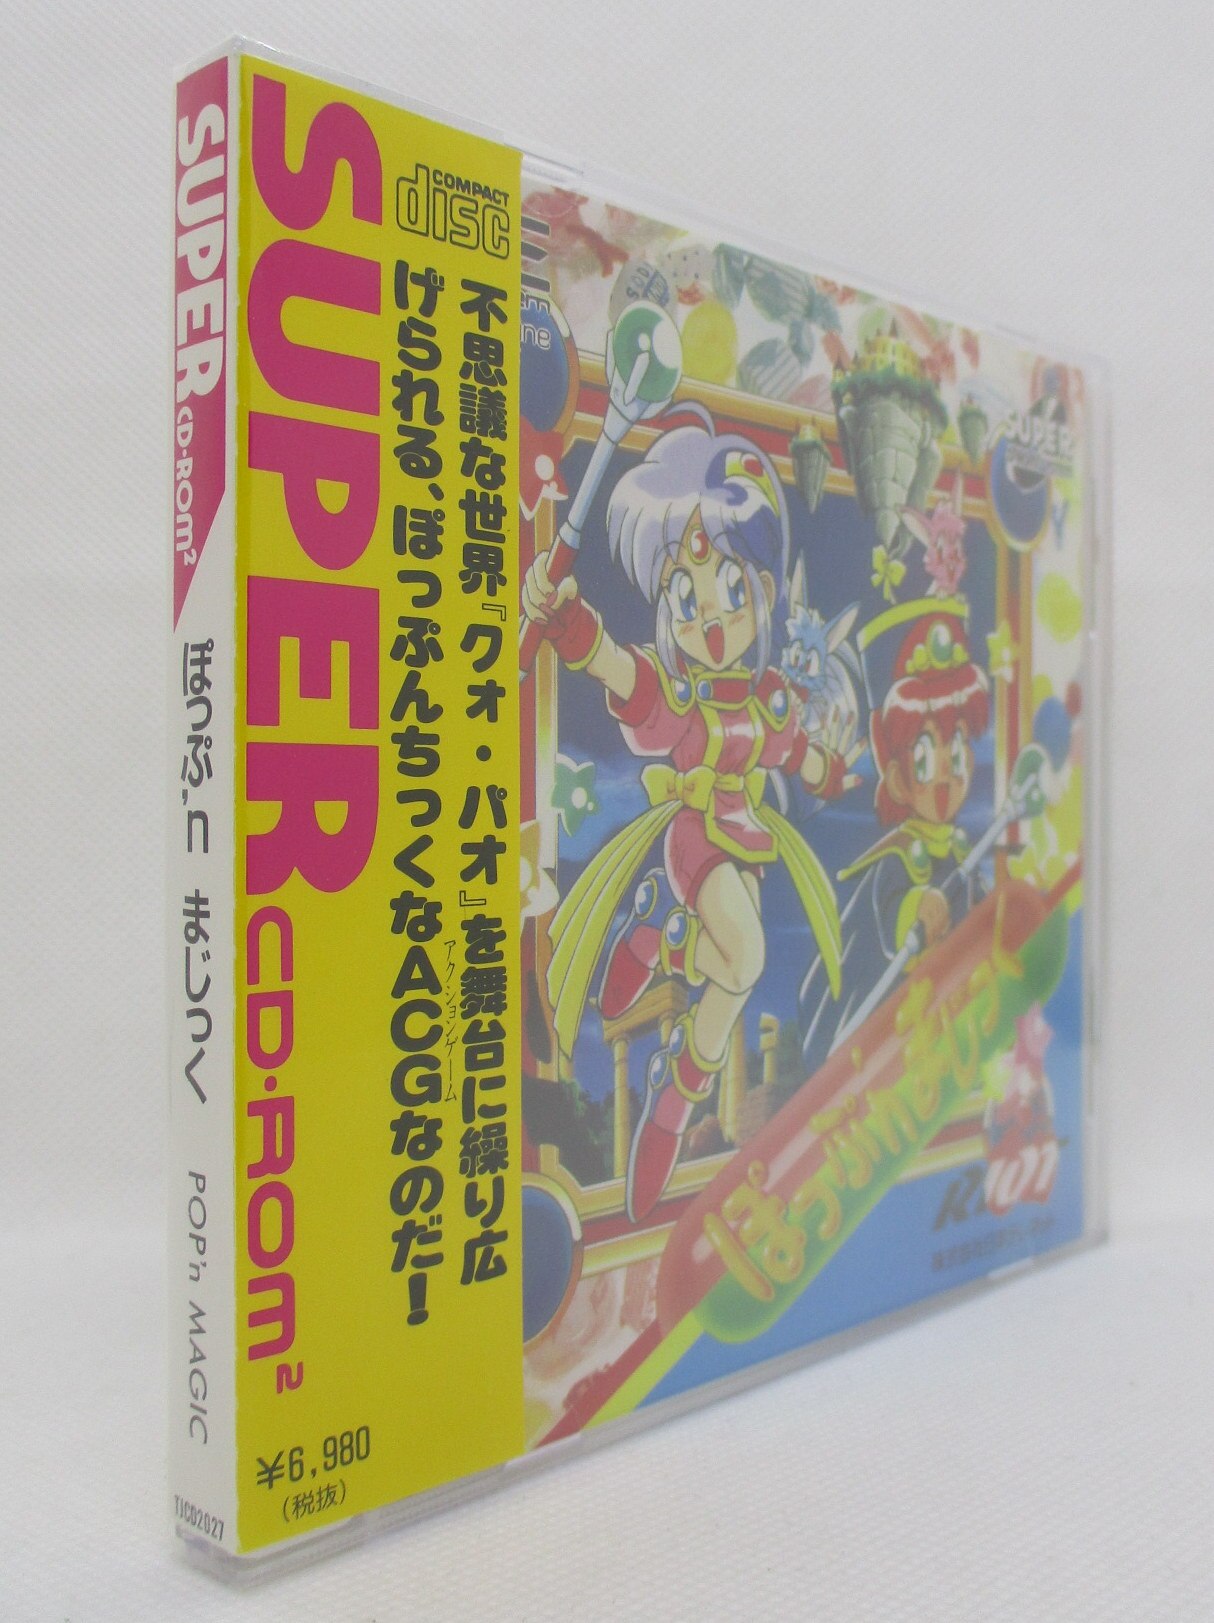 ぽっぷ'nまじっく PCエンジンSUPER CD-ROM2 - テレビゲーム